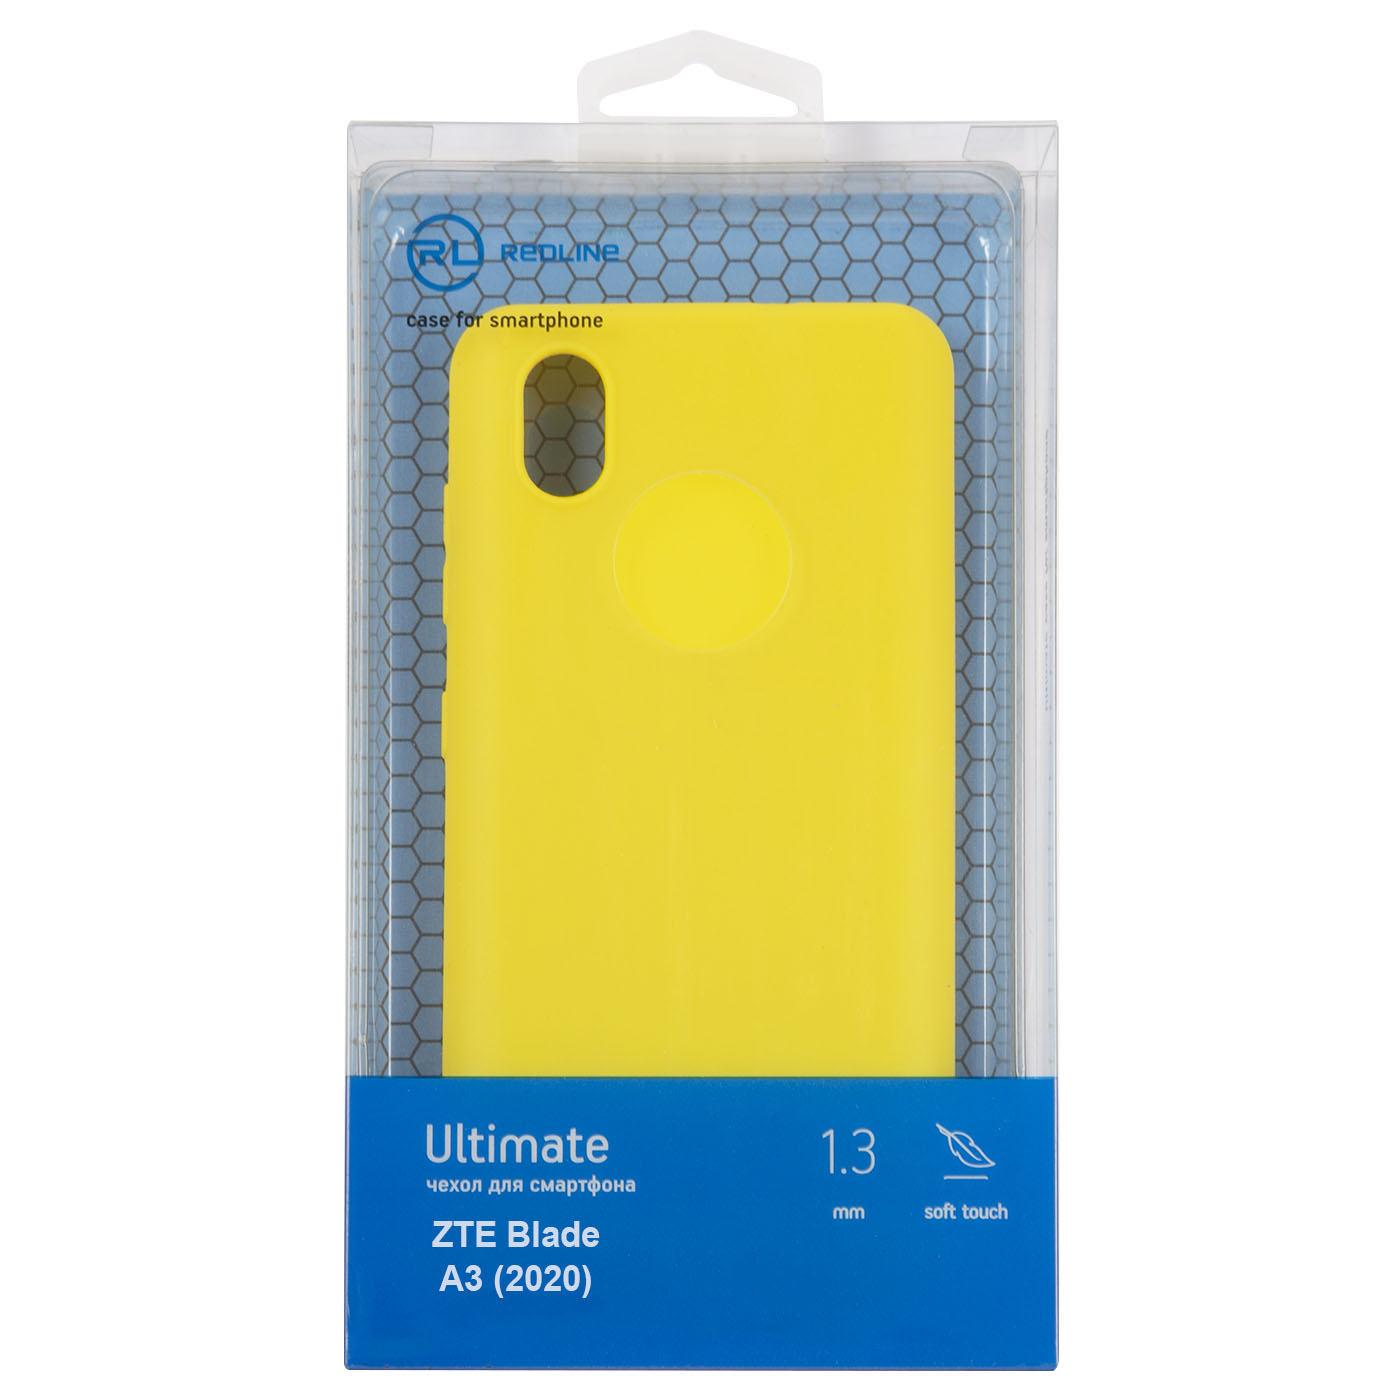 Чехол защитный Red Line Ultimate для ZTE Blade A3 (2020), желтый УТ000026585 чехол накладка чехол для телефона krutoff clear case хаги ваги желтый для zte blade a5 2020